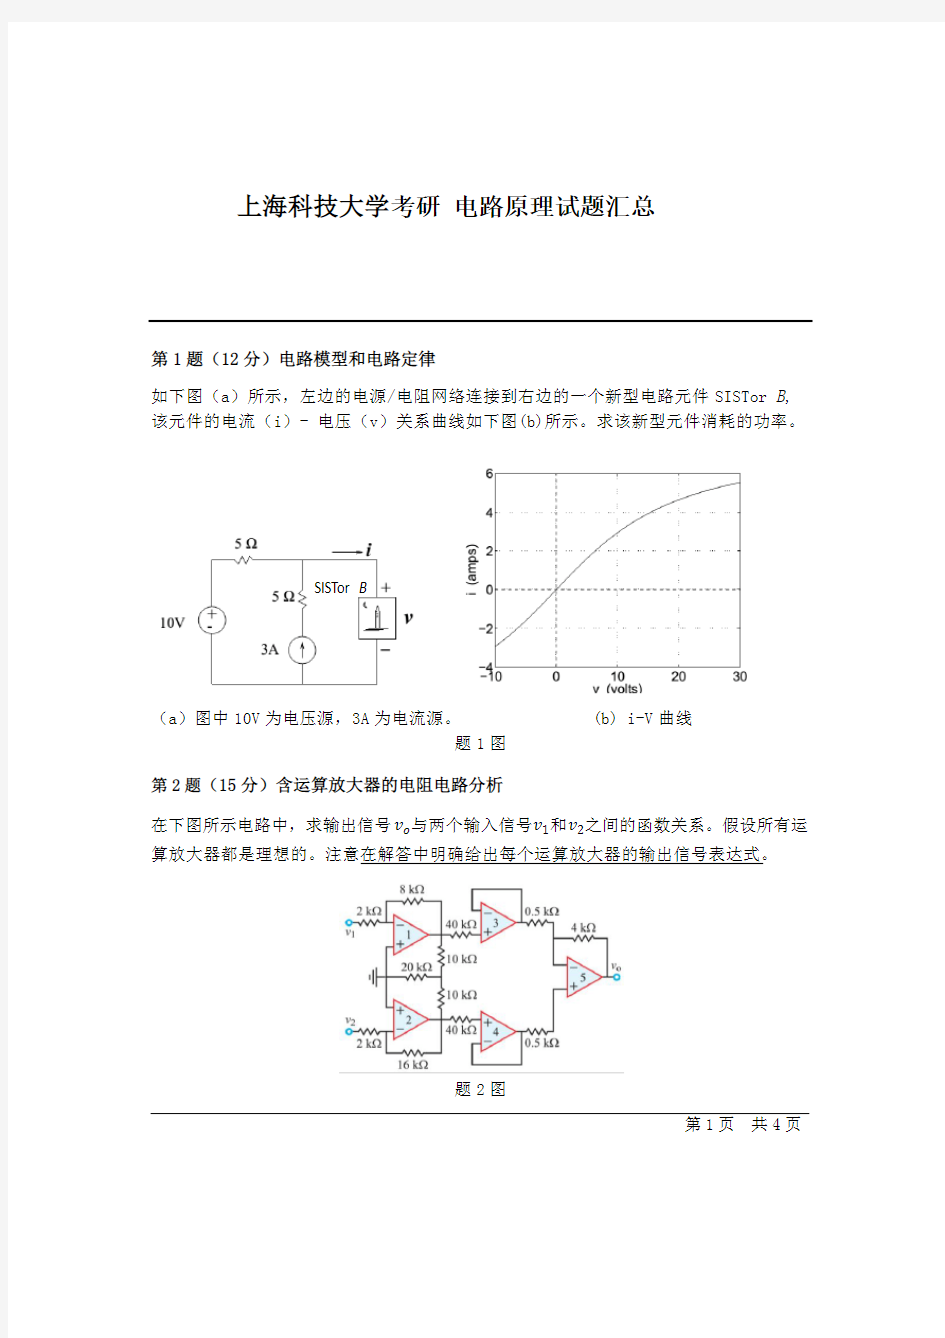 上海科技大学考研电路原理试题汇总